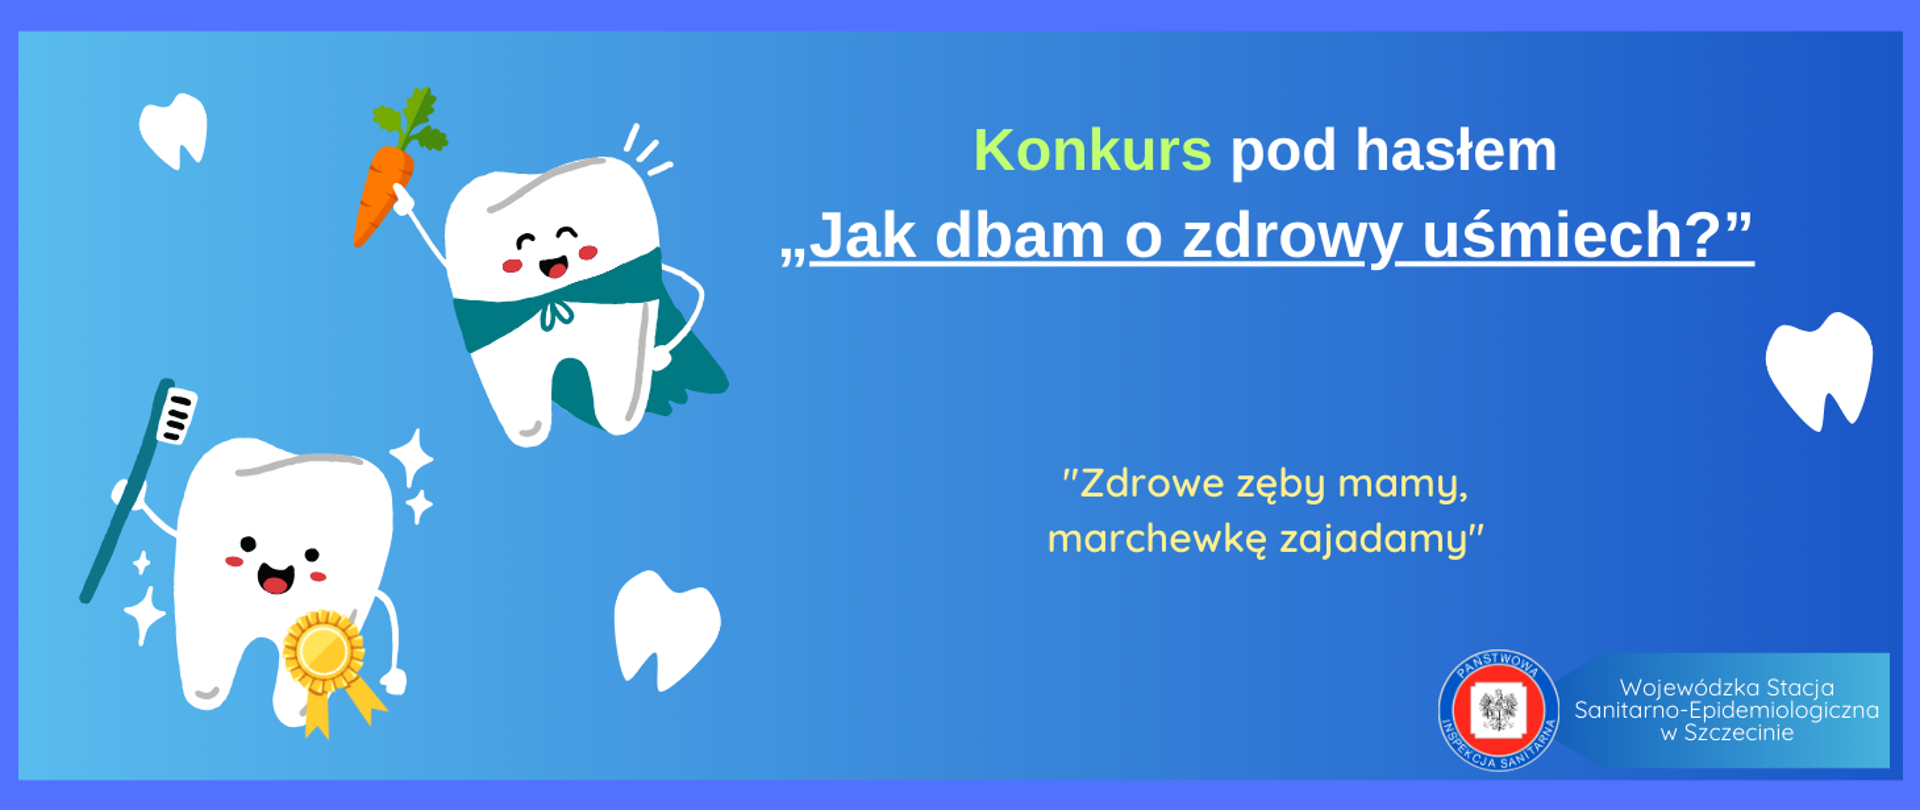 Baner z ilustracjami zębów oraz napisem: Konkurs pod hasłem "Jak dbam o zdrowy uśmiech?" Zdrowe zęby mamy marchewkę zajadamy"